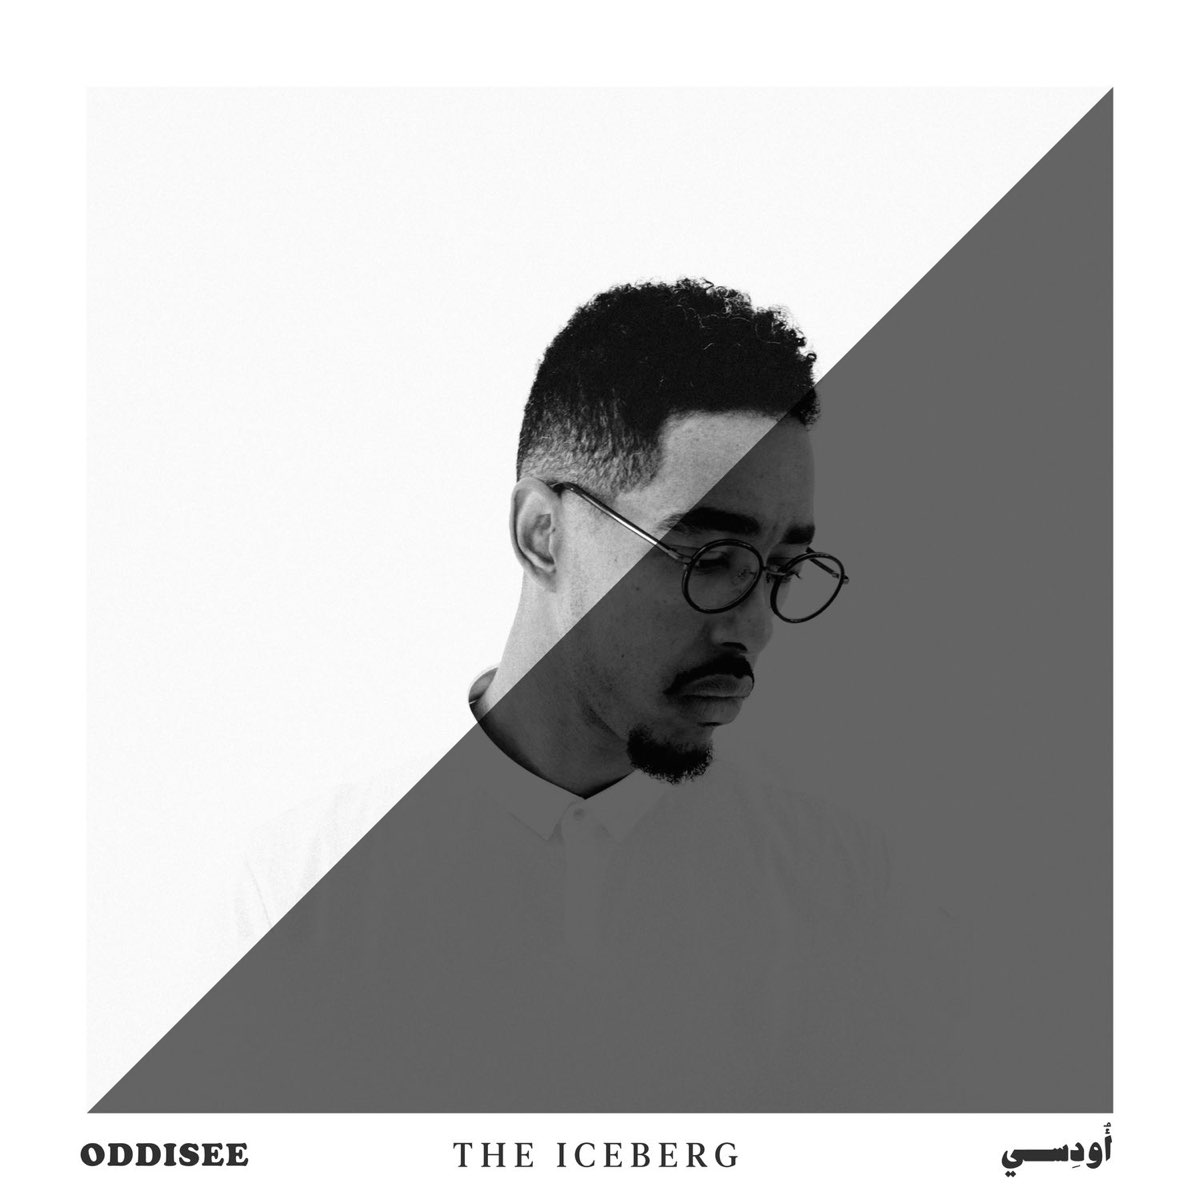 The Iceberg by Oddisee on Apple Music